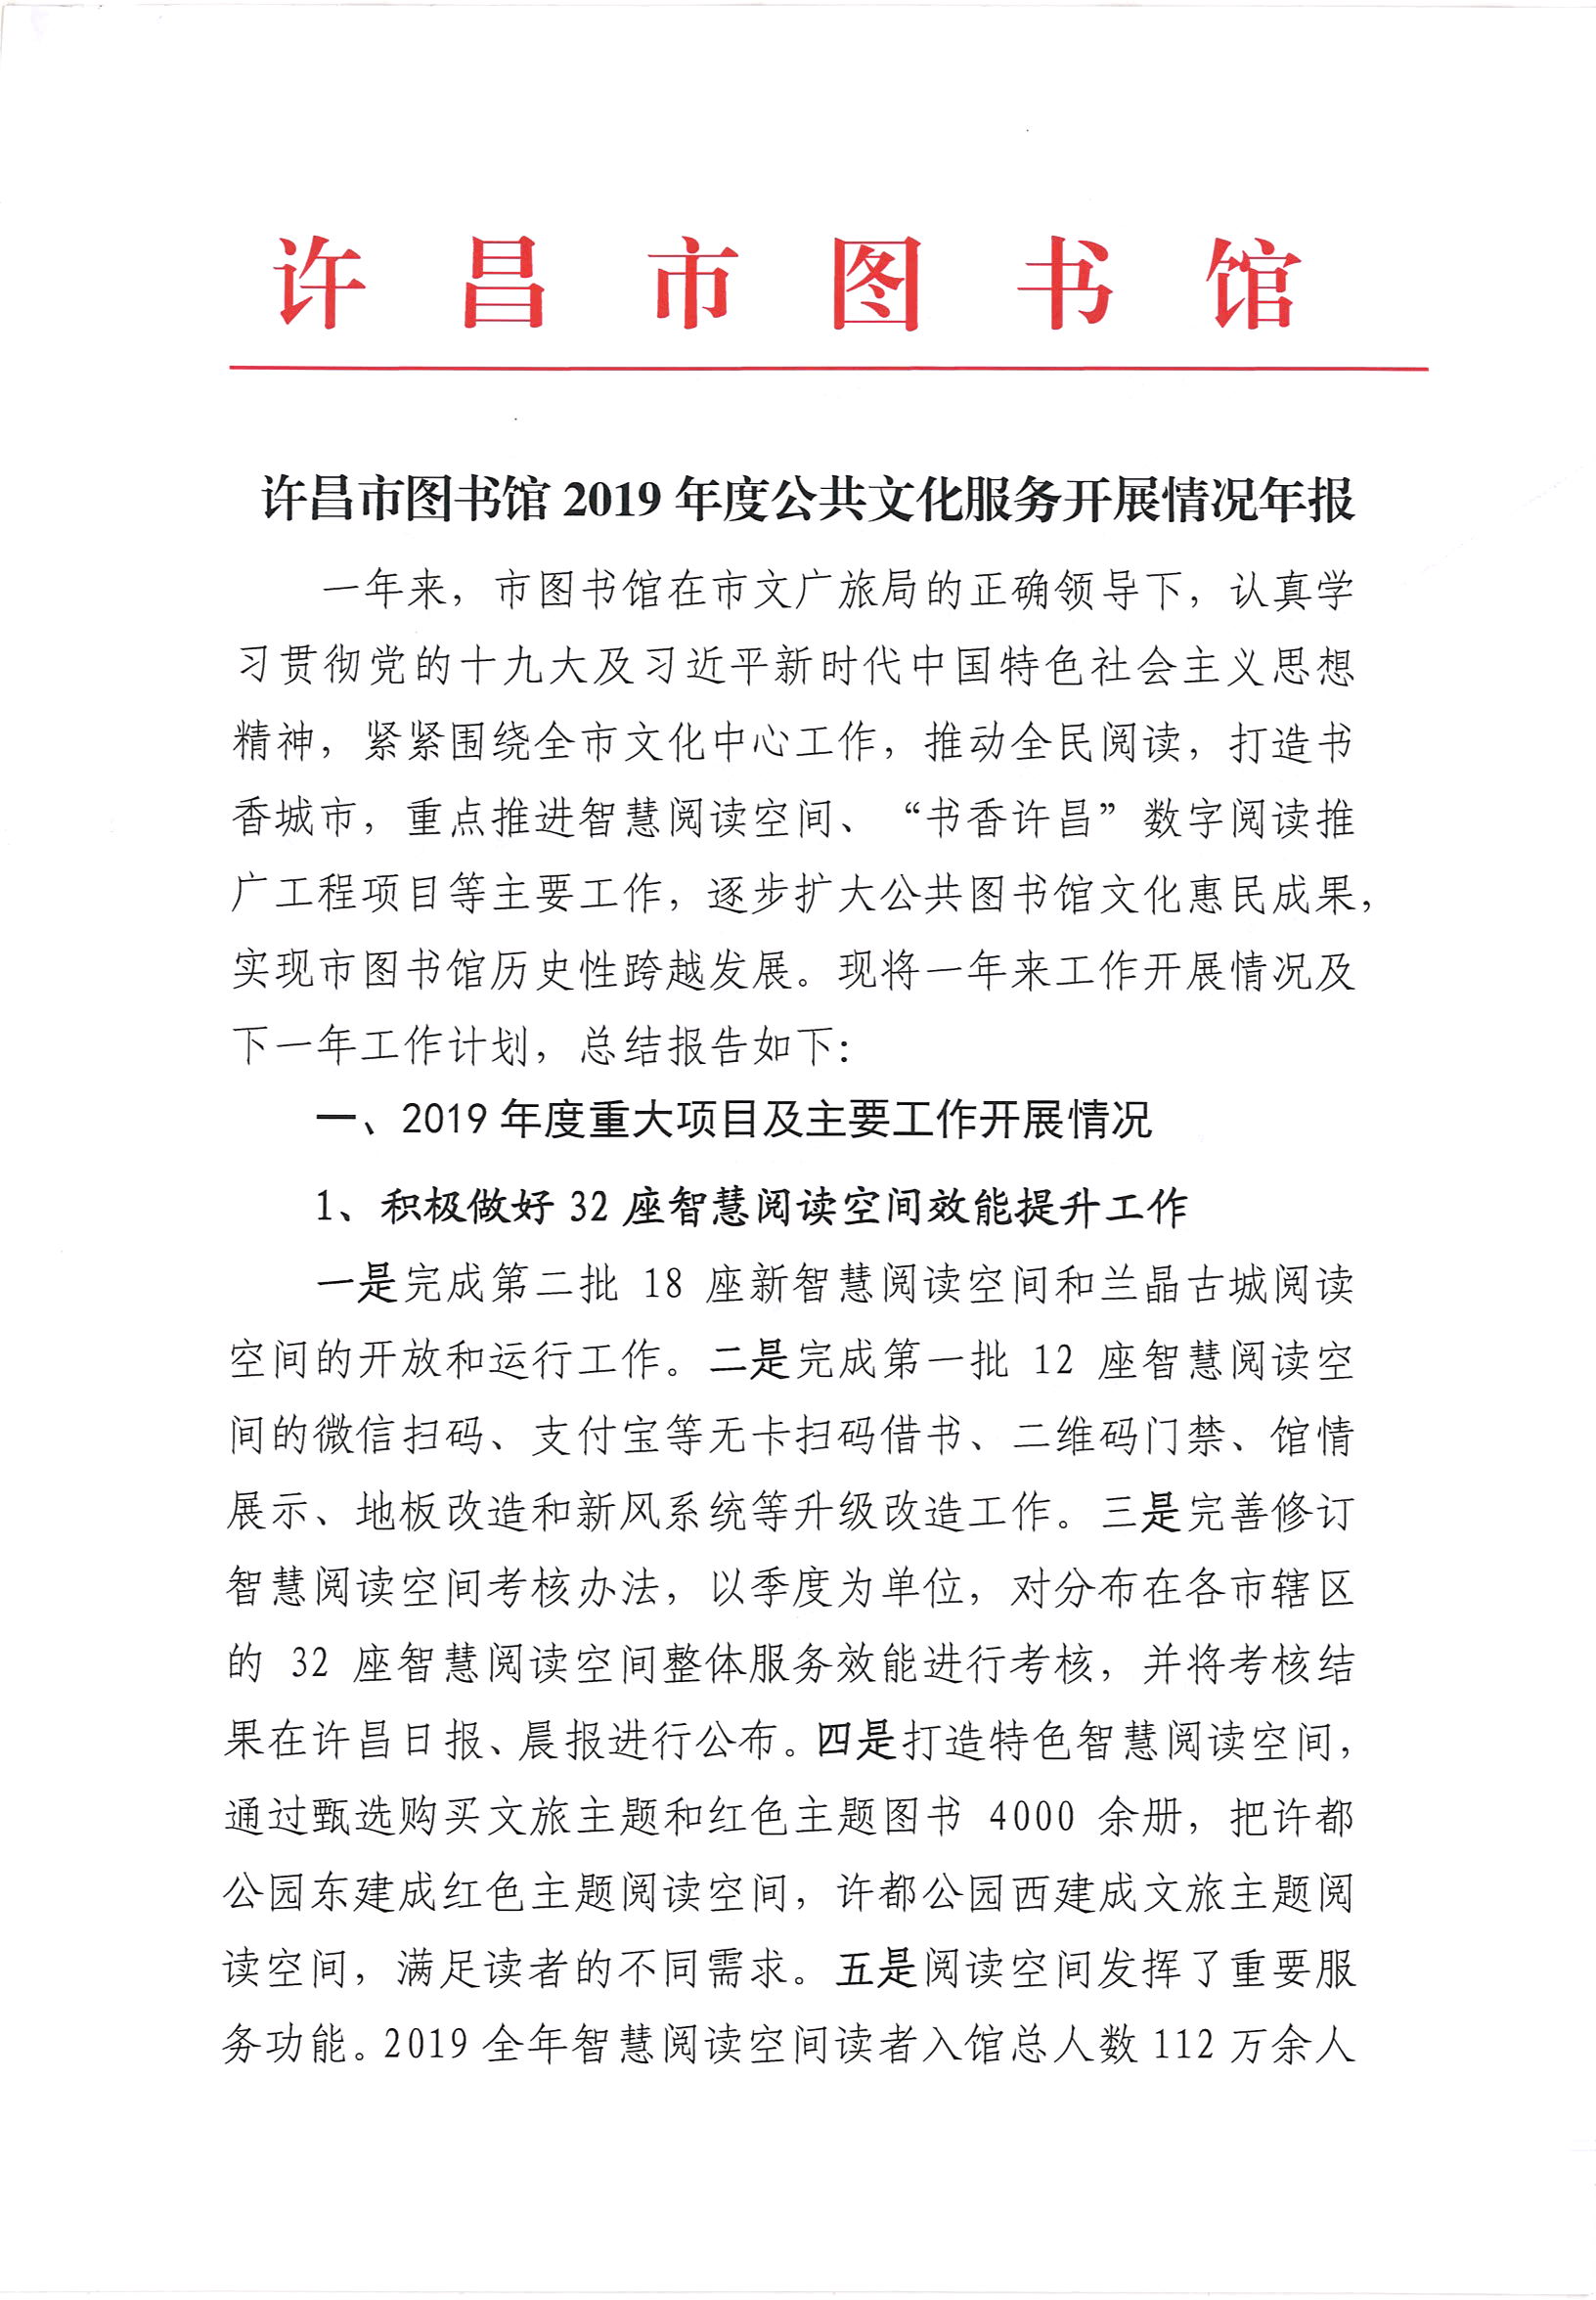 许昌市图书馆2019年度公共文化服务开展情况年报_部分1.jpg